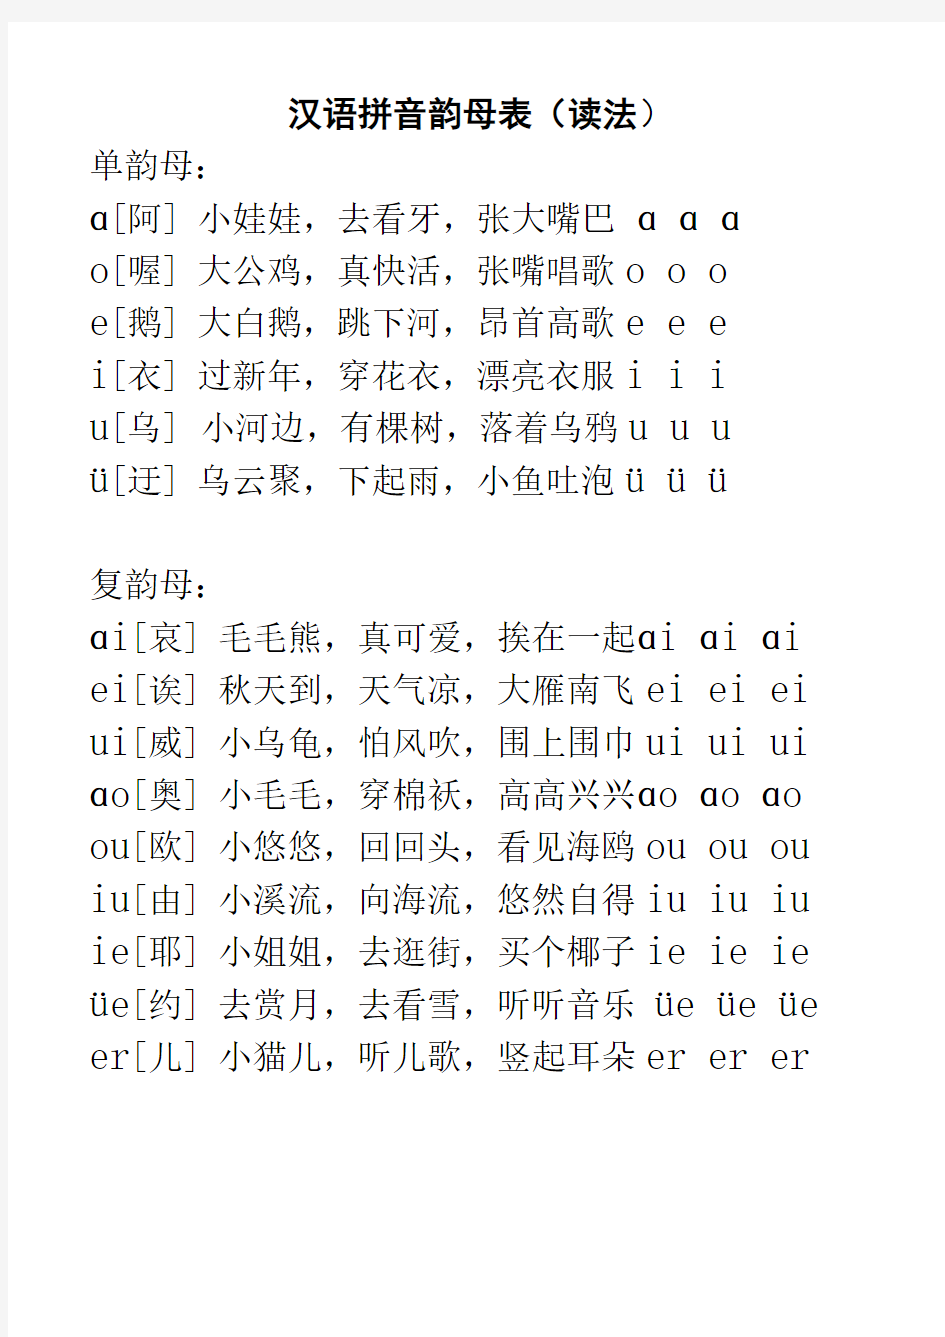 一年级汉语拼音字母表-含读法和儿歌